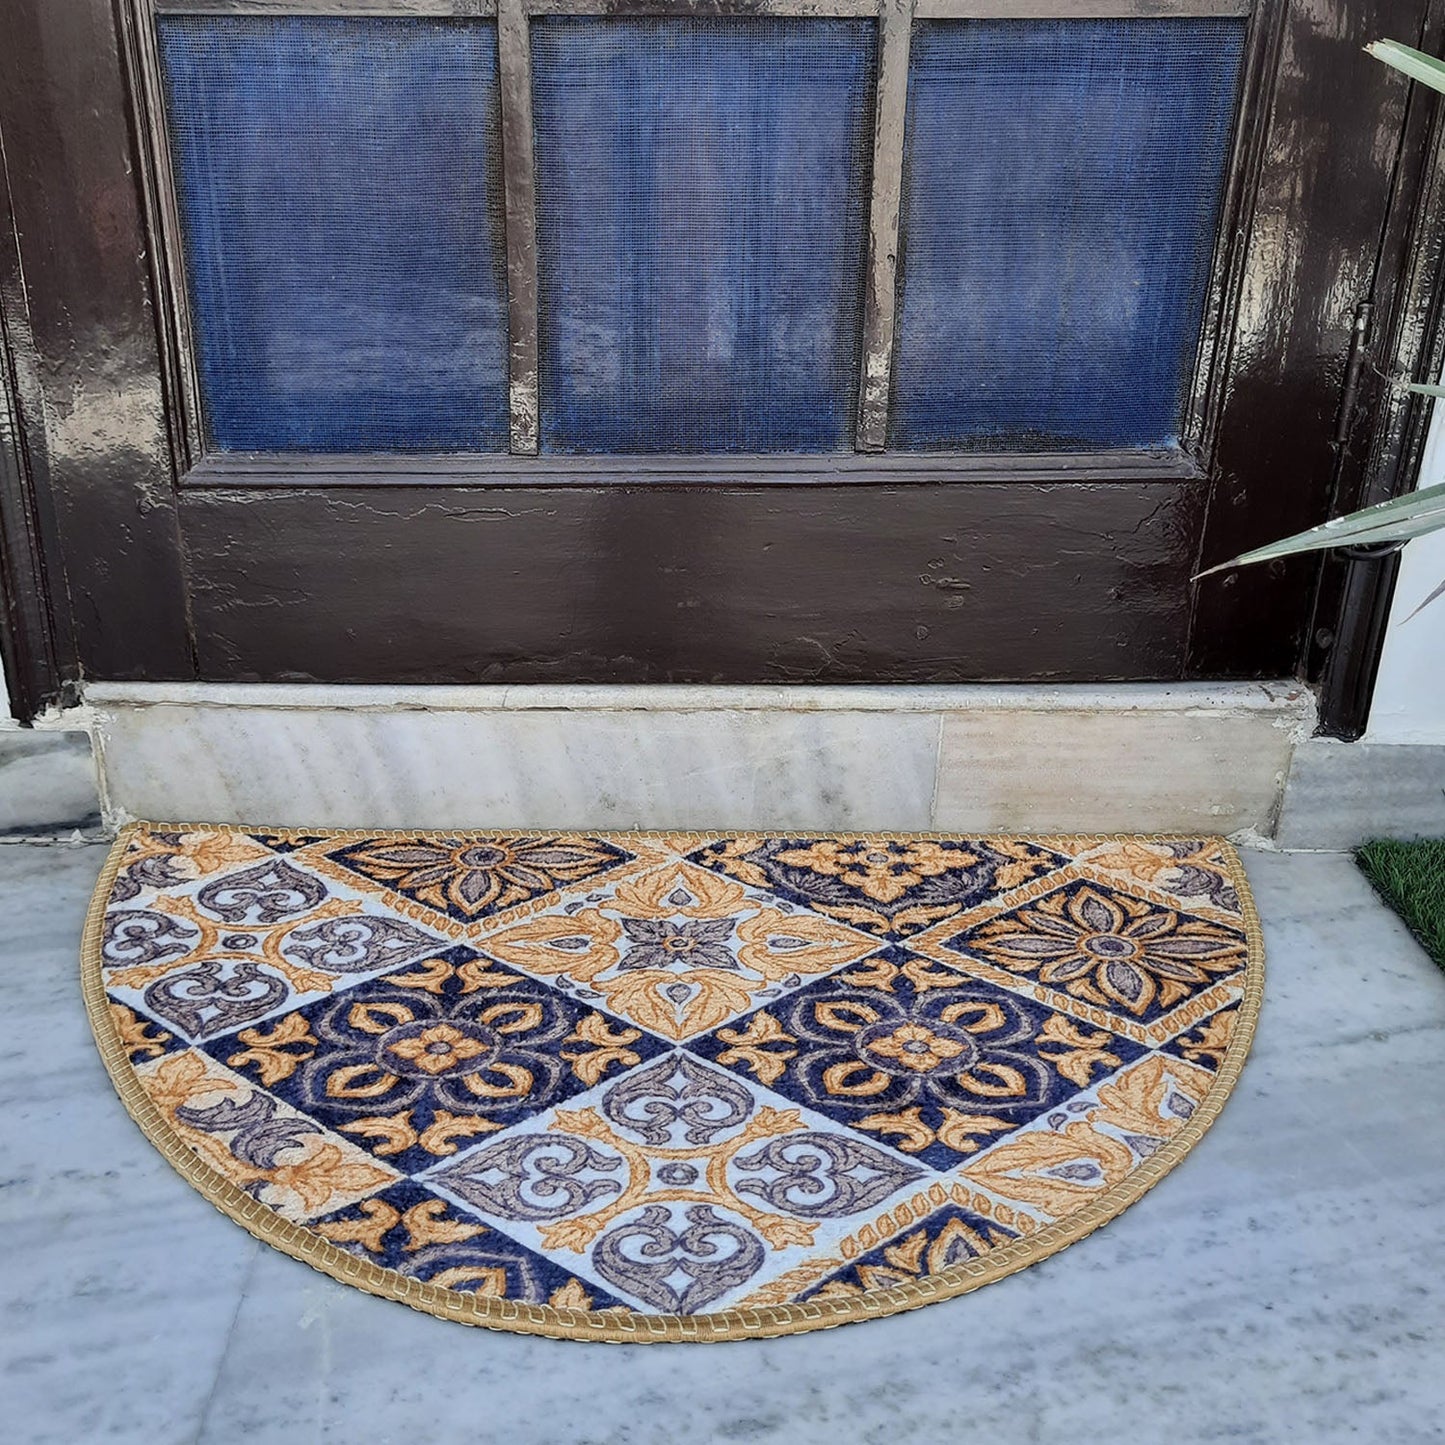 Avioni Home Floor Mats in Beautiful Moroccan Brown Design | Anti Slip, Durable & Washable | Outdoor & Indoor